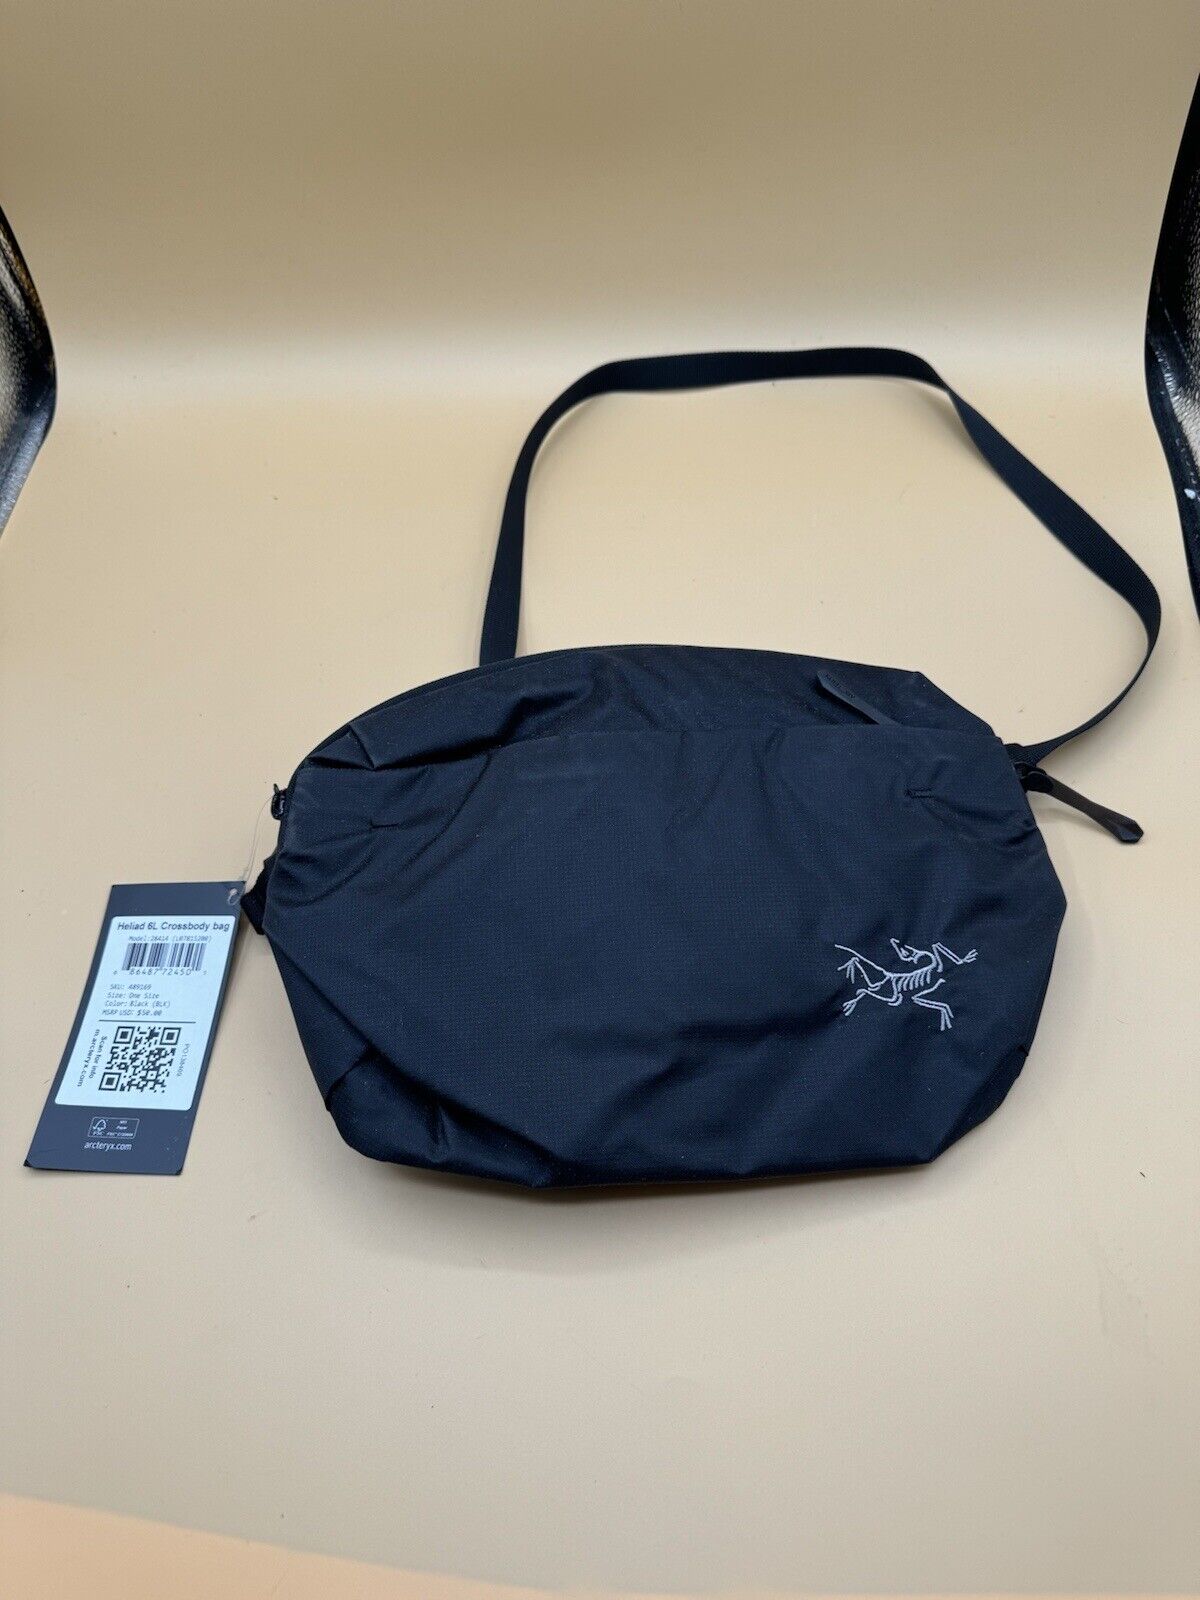 Heliad 6L Crossbody Bag. Model: 28414. Black.